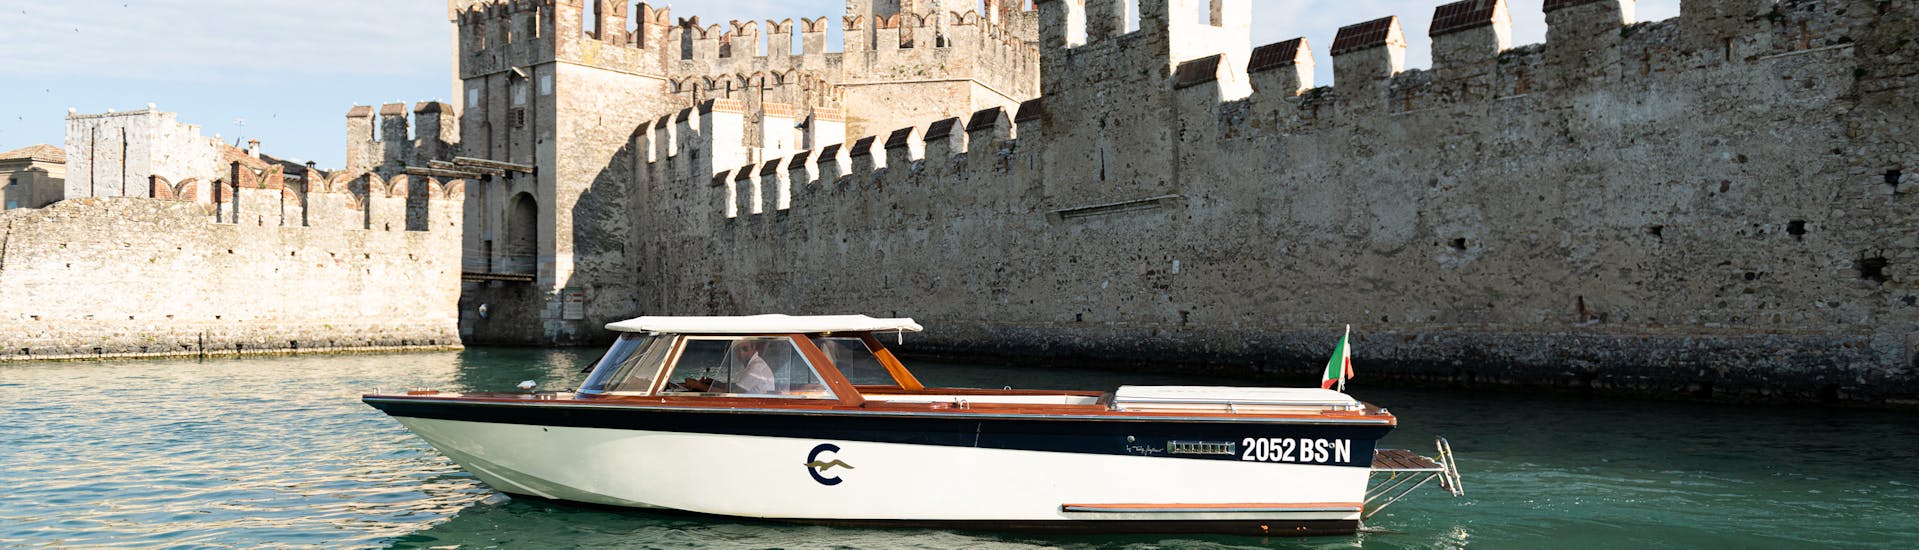 Un'imbarcazione in legno in stile veneziano davanti alle mura del castello scaligero di Sirmione, utilizzata durante la gita privata in barca sul Lago di Garda con Consolini Boats.